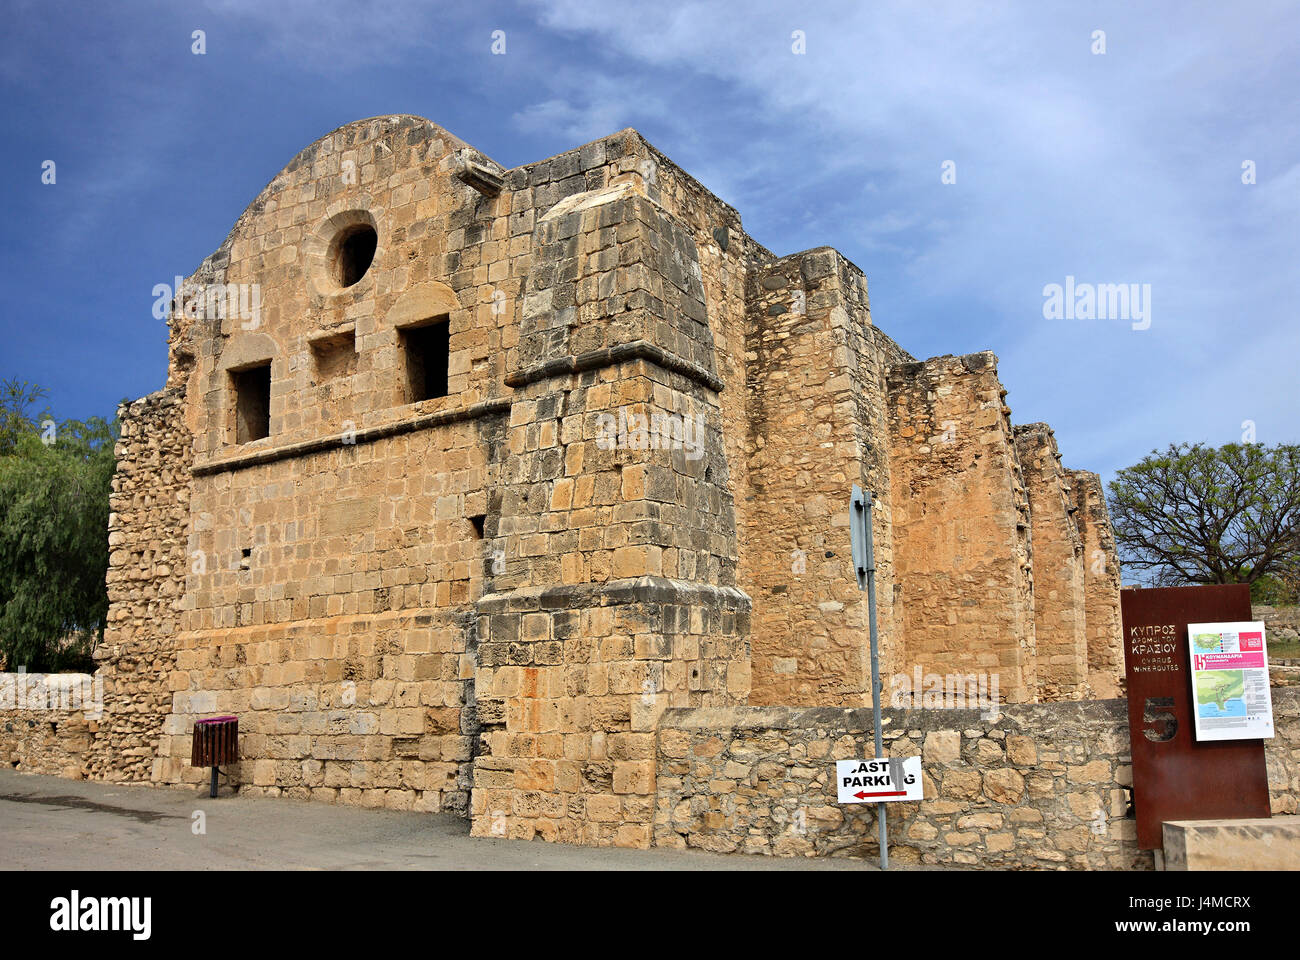 La fabbrica di zucchero del Castello di Kolossi, un ex roccaforte dei crociati a sud-ovest di bordo del villaggio di kolossi, Limassol District, isola di Cipro. Foto Stock